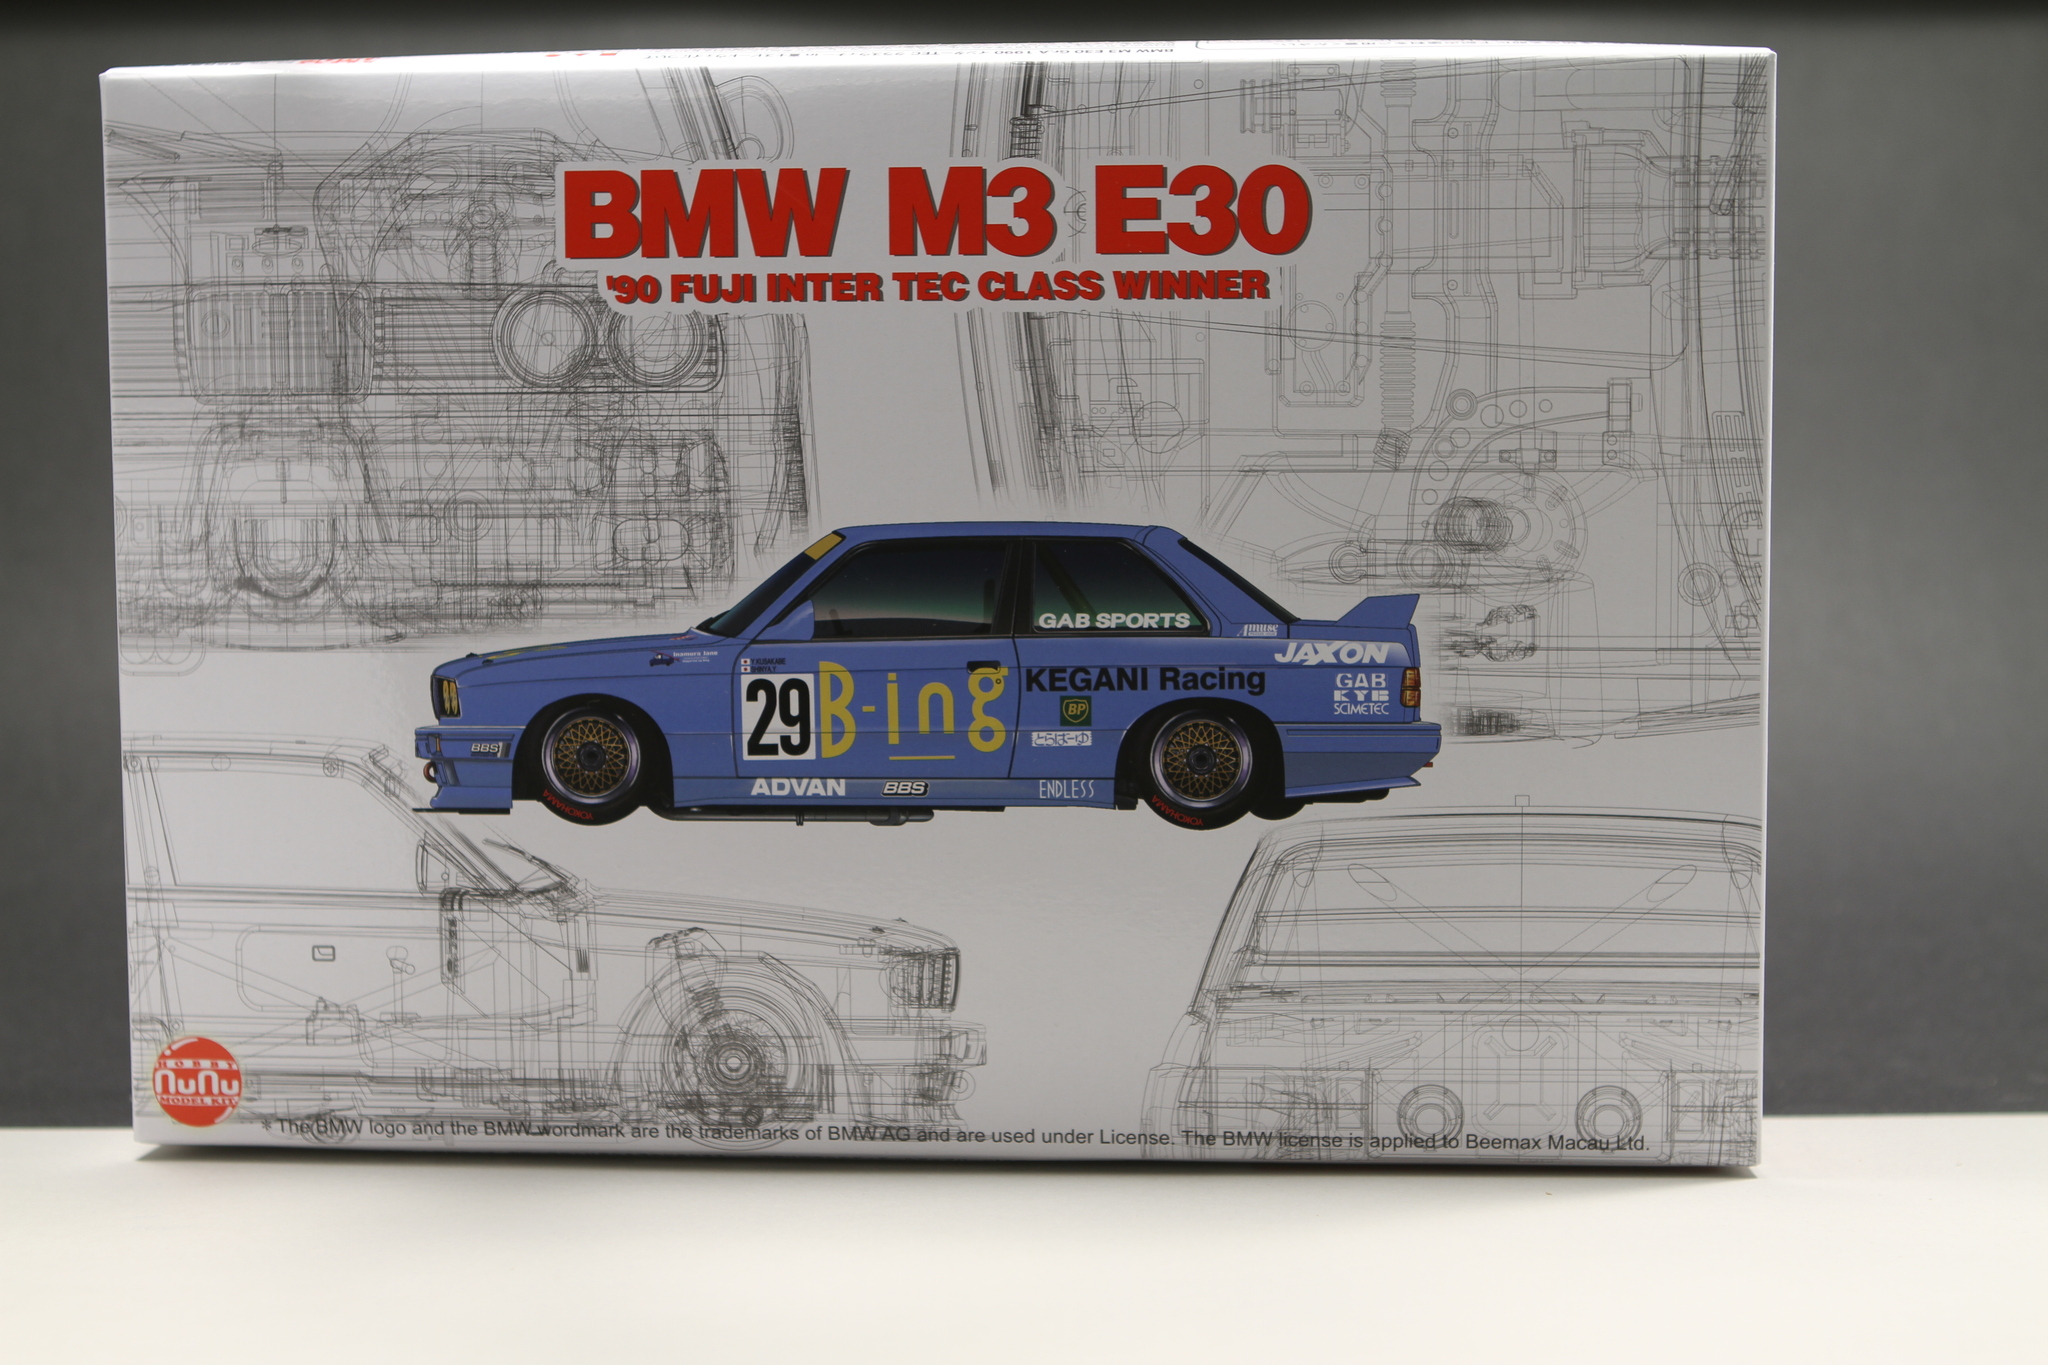 BMW M3 E30 GR.A 1990 Inter TEC class Winner